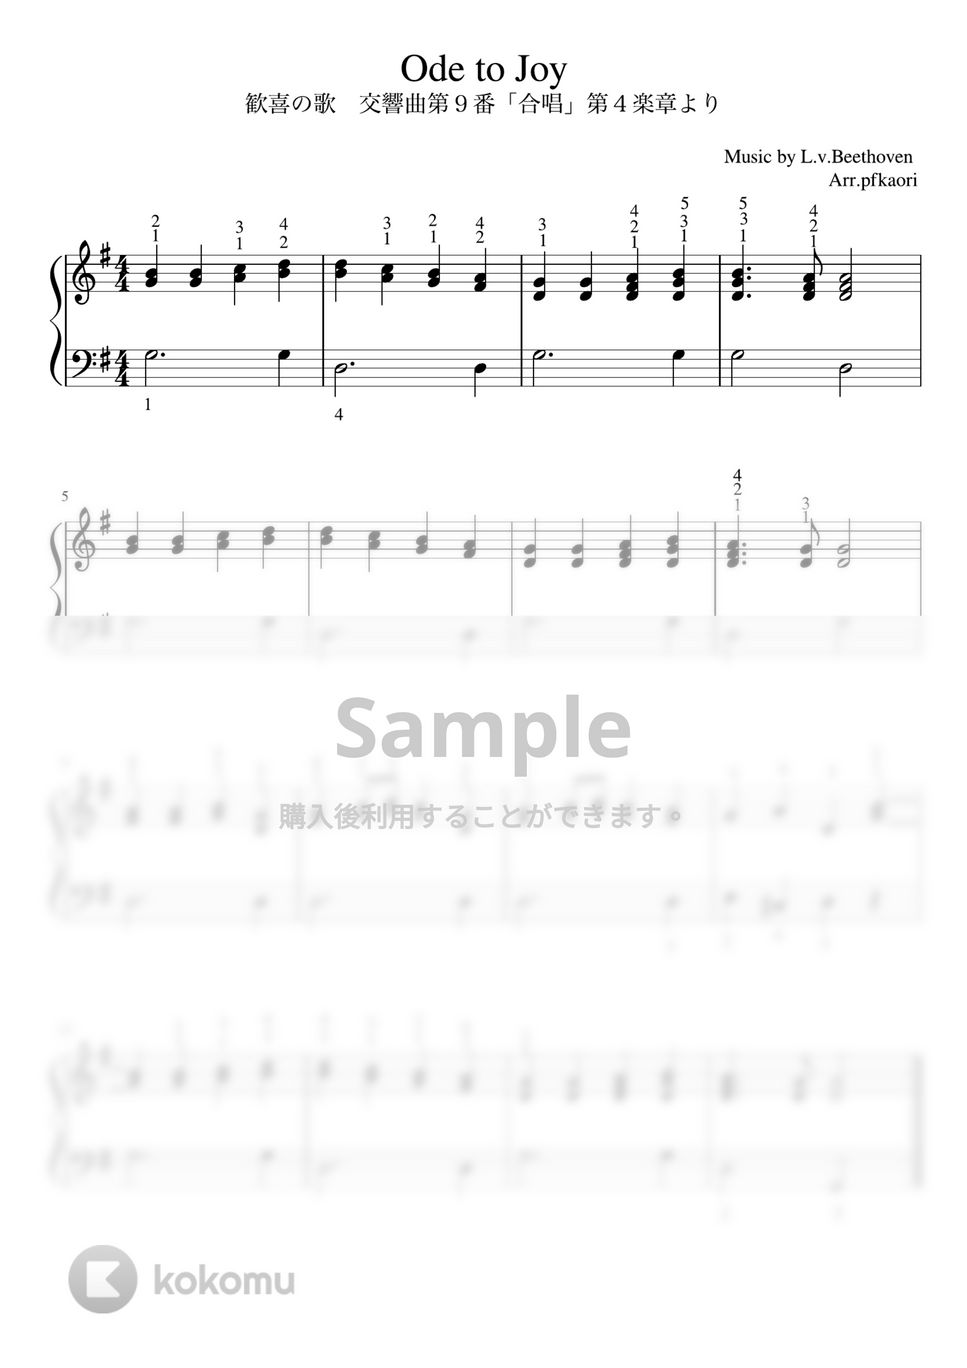 ベートーヴェン - 歓喜の歌 (Gdur・ピアノソロ初〜中級) by pfkaori